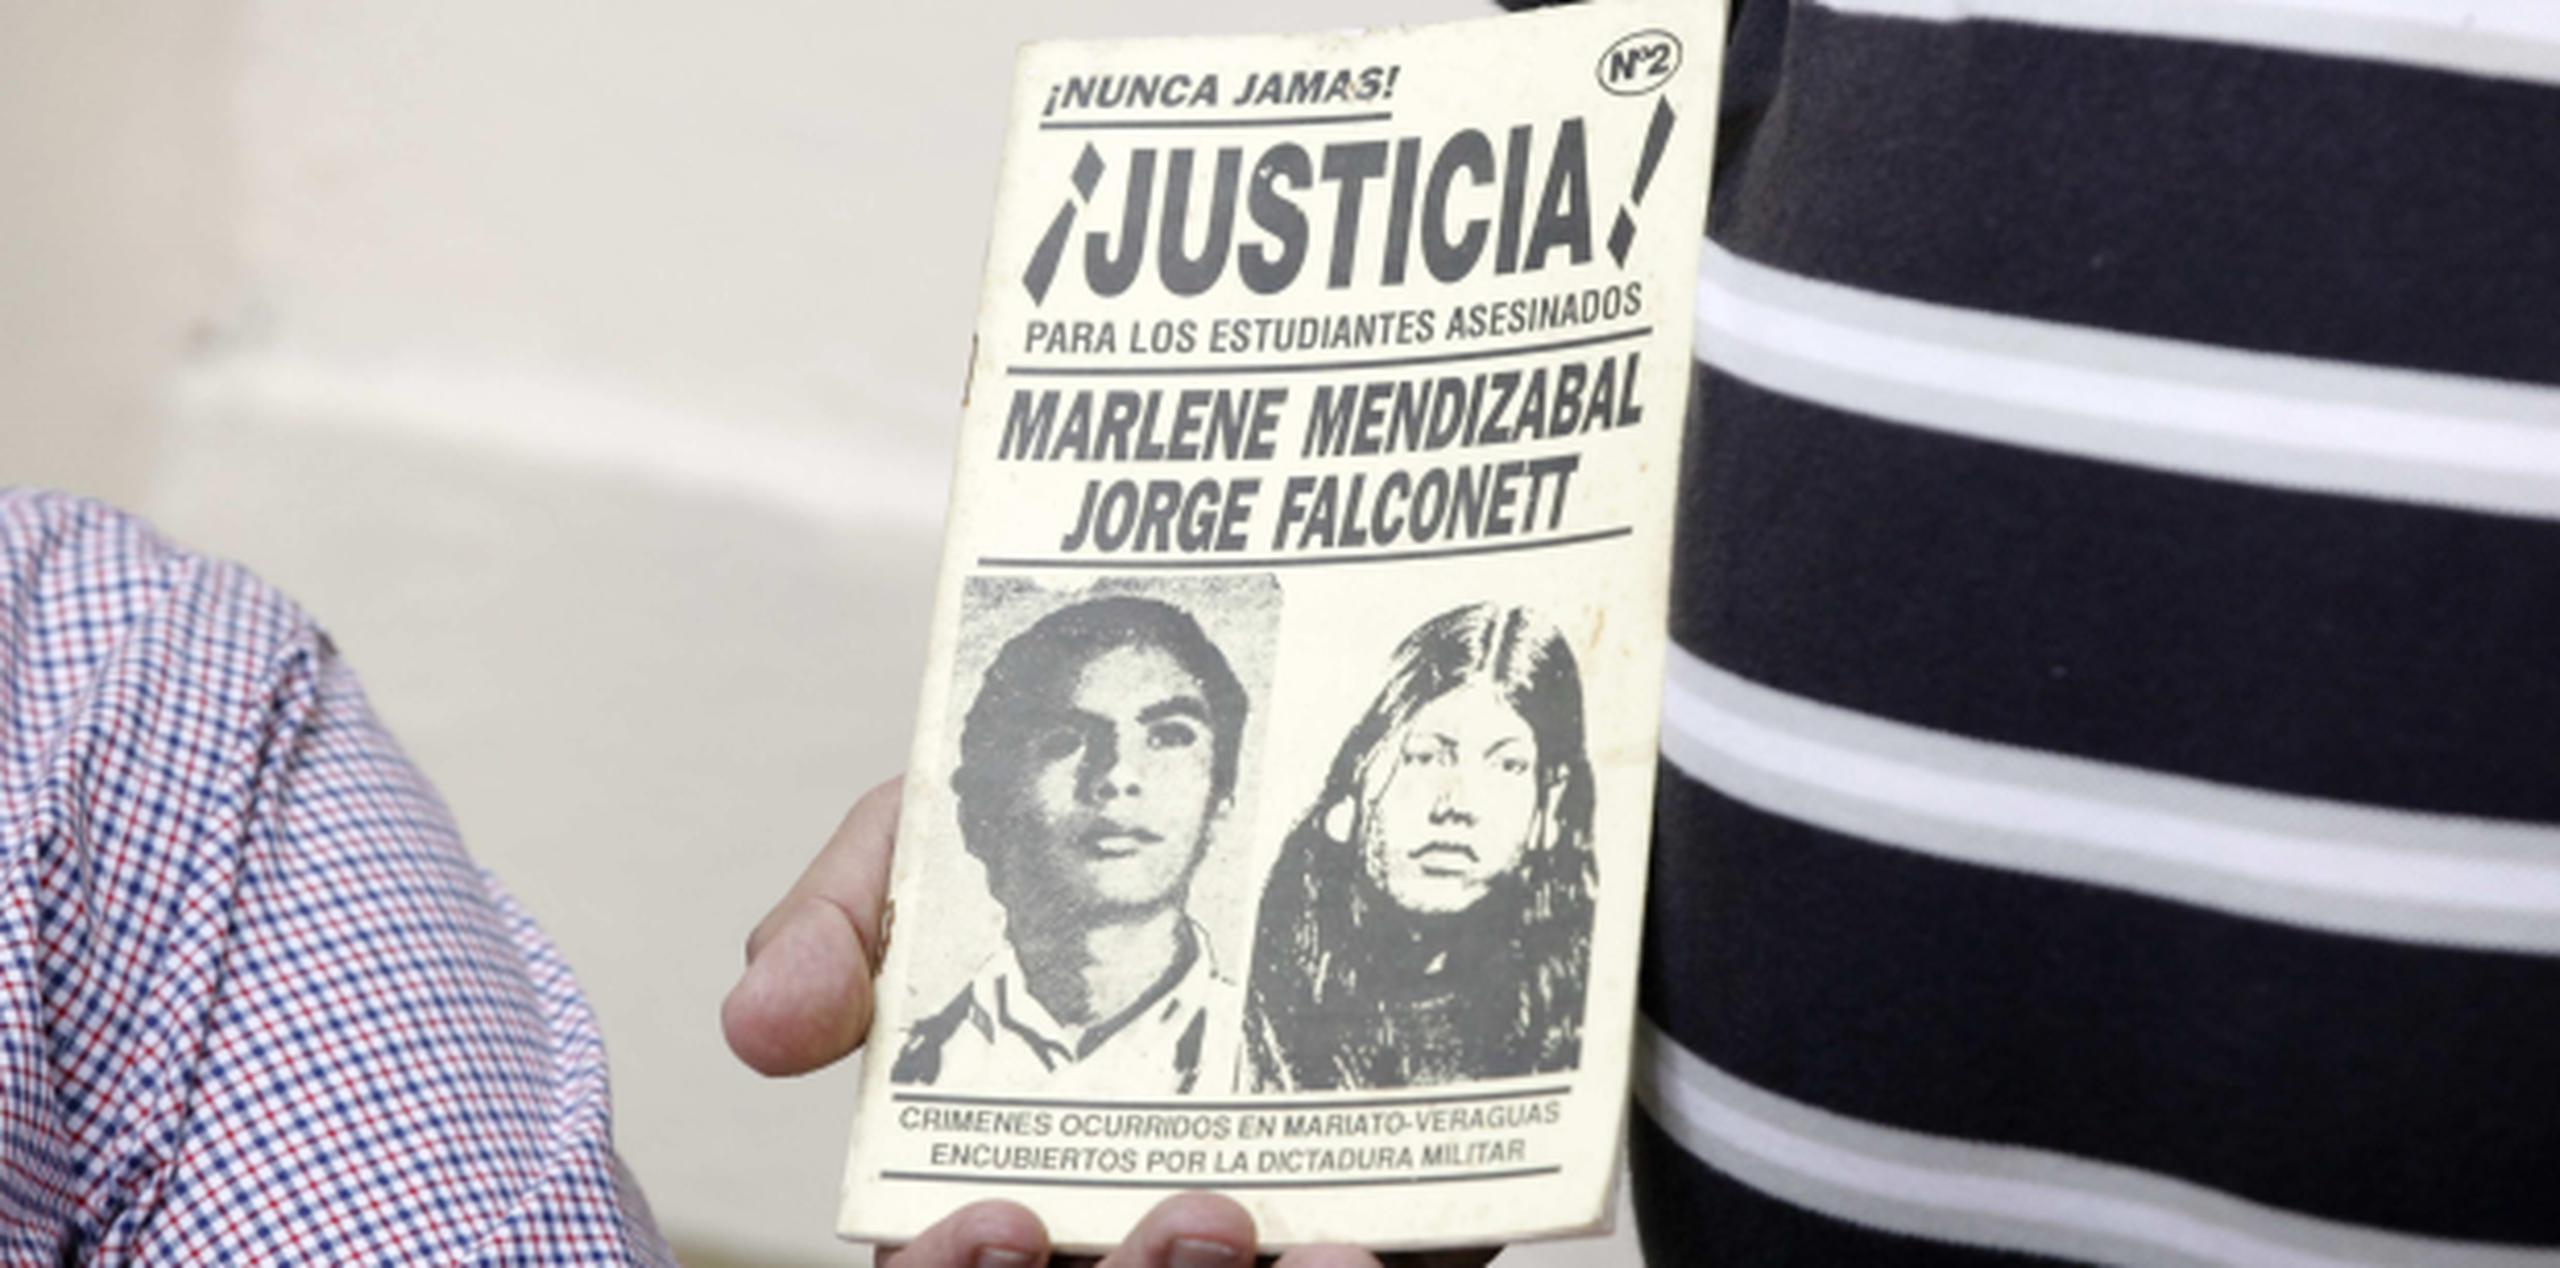 Vista de un panfleto con la imagen de la joven desaparecida durante la dictadura militar, Marlene Mendizábal, en el acto para recibir sus restos hoy, miércoles, en ciudad de Panamá. (EFE / Alejandro Bolívar)